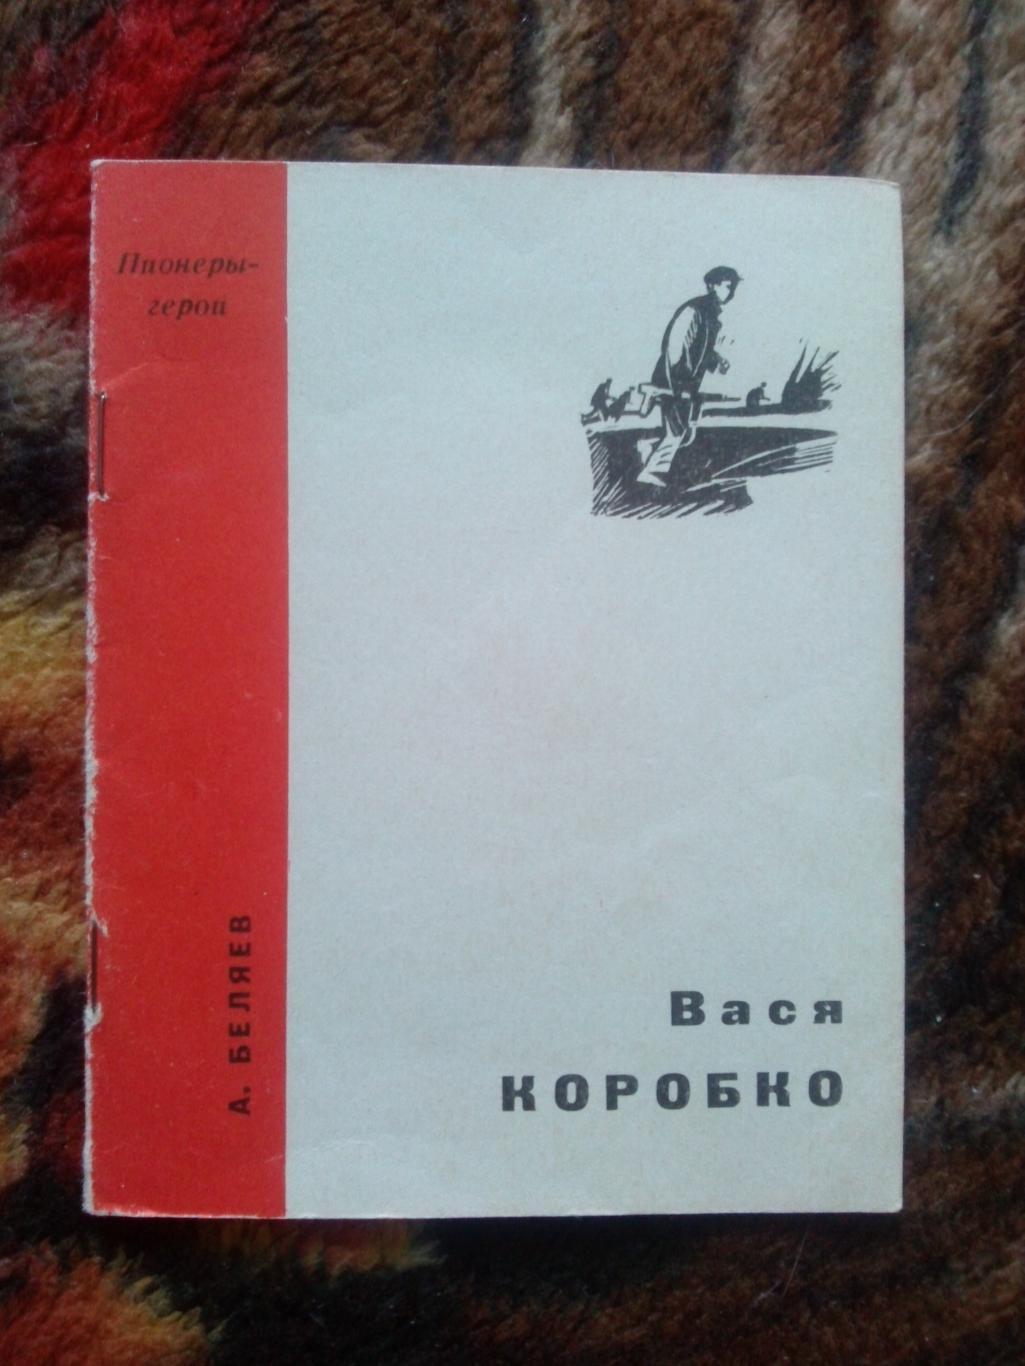 Пионеры-герои (Плакат + брошюра) 1967 г. Вася Коробко (Пионер , агитация) 3